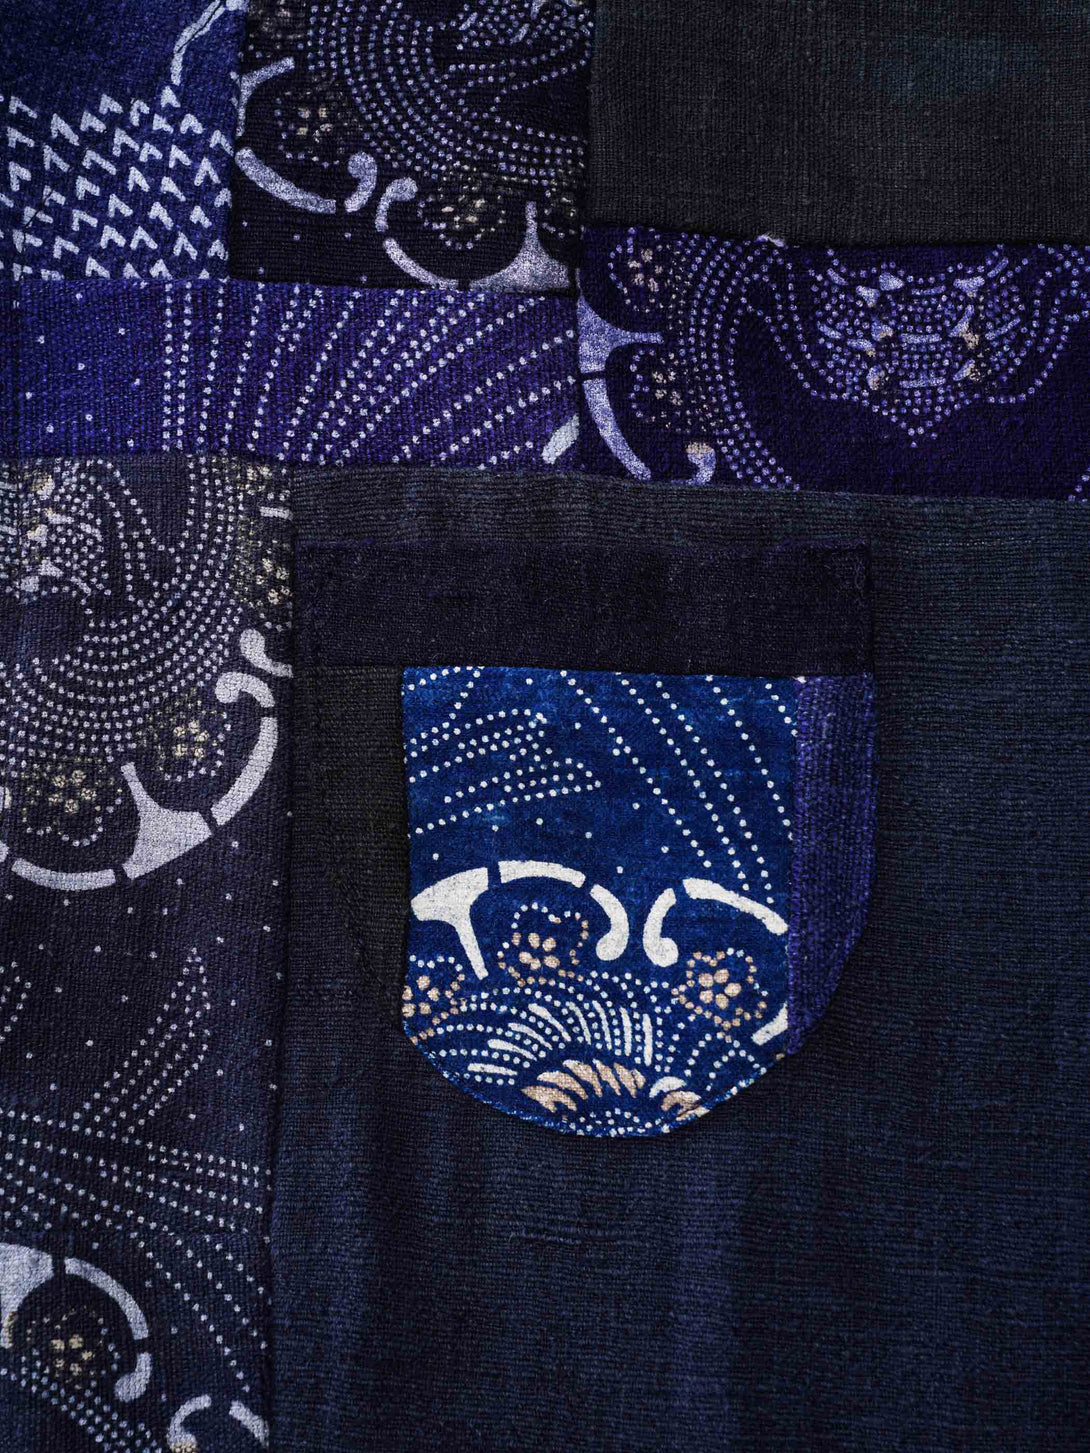 藍染めロングスリーブTシャツのカスタムメイド天然竹製ボタン、Y字型の襟口と内部のテクスチャーデザイン